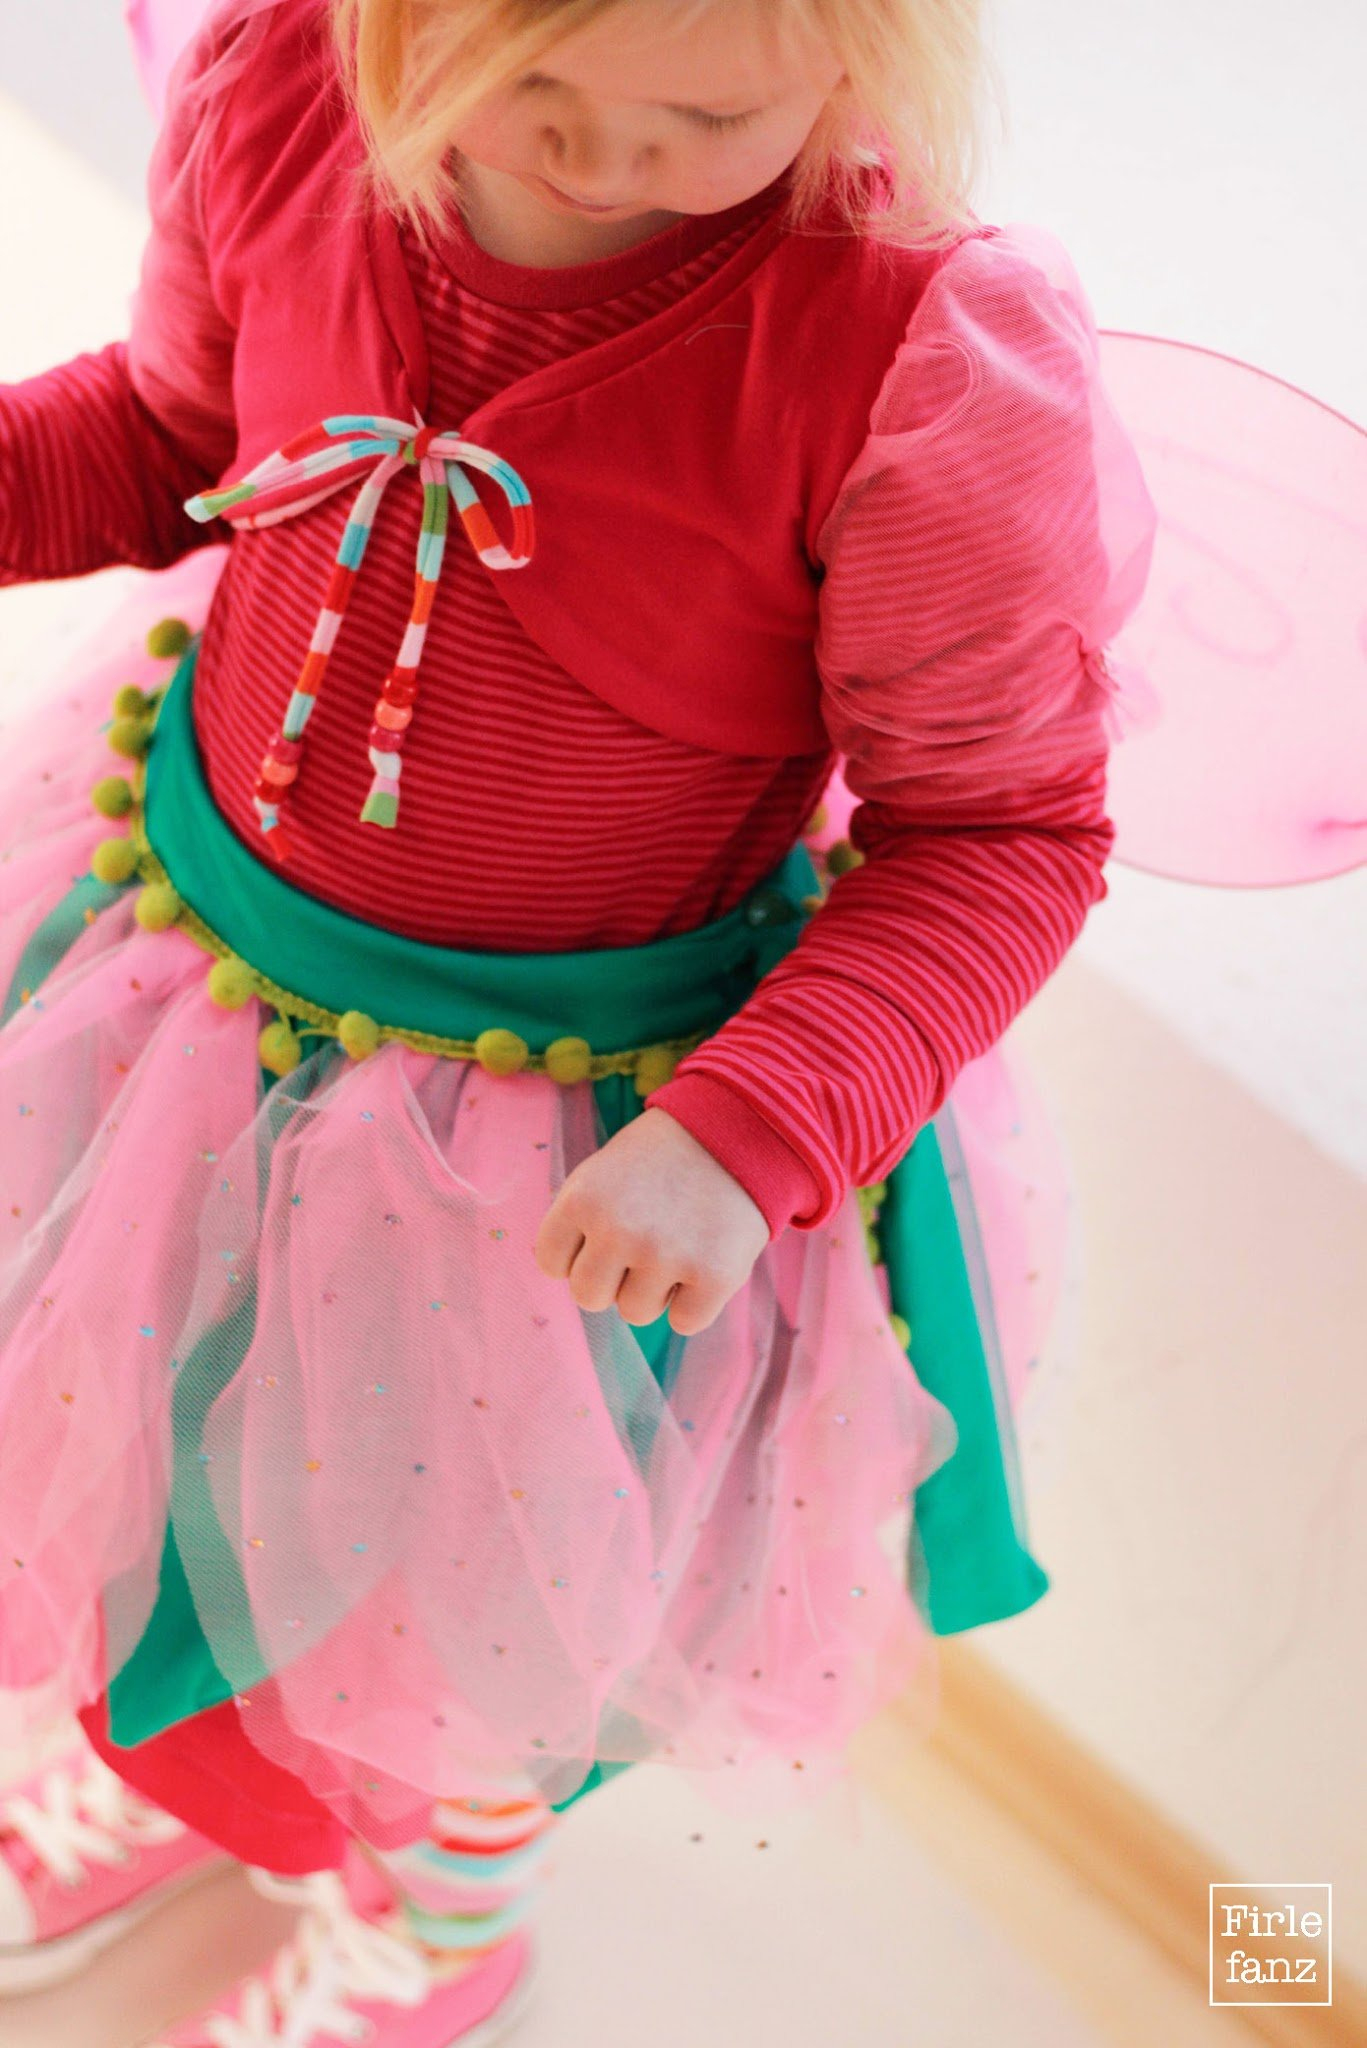 Darf Ich Vorstellen? Prinzessin Lillifee | Firlefanz Blog verwandt mit Prinzessin Lillifee Kostüm Für Erwachsene